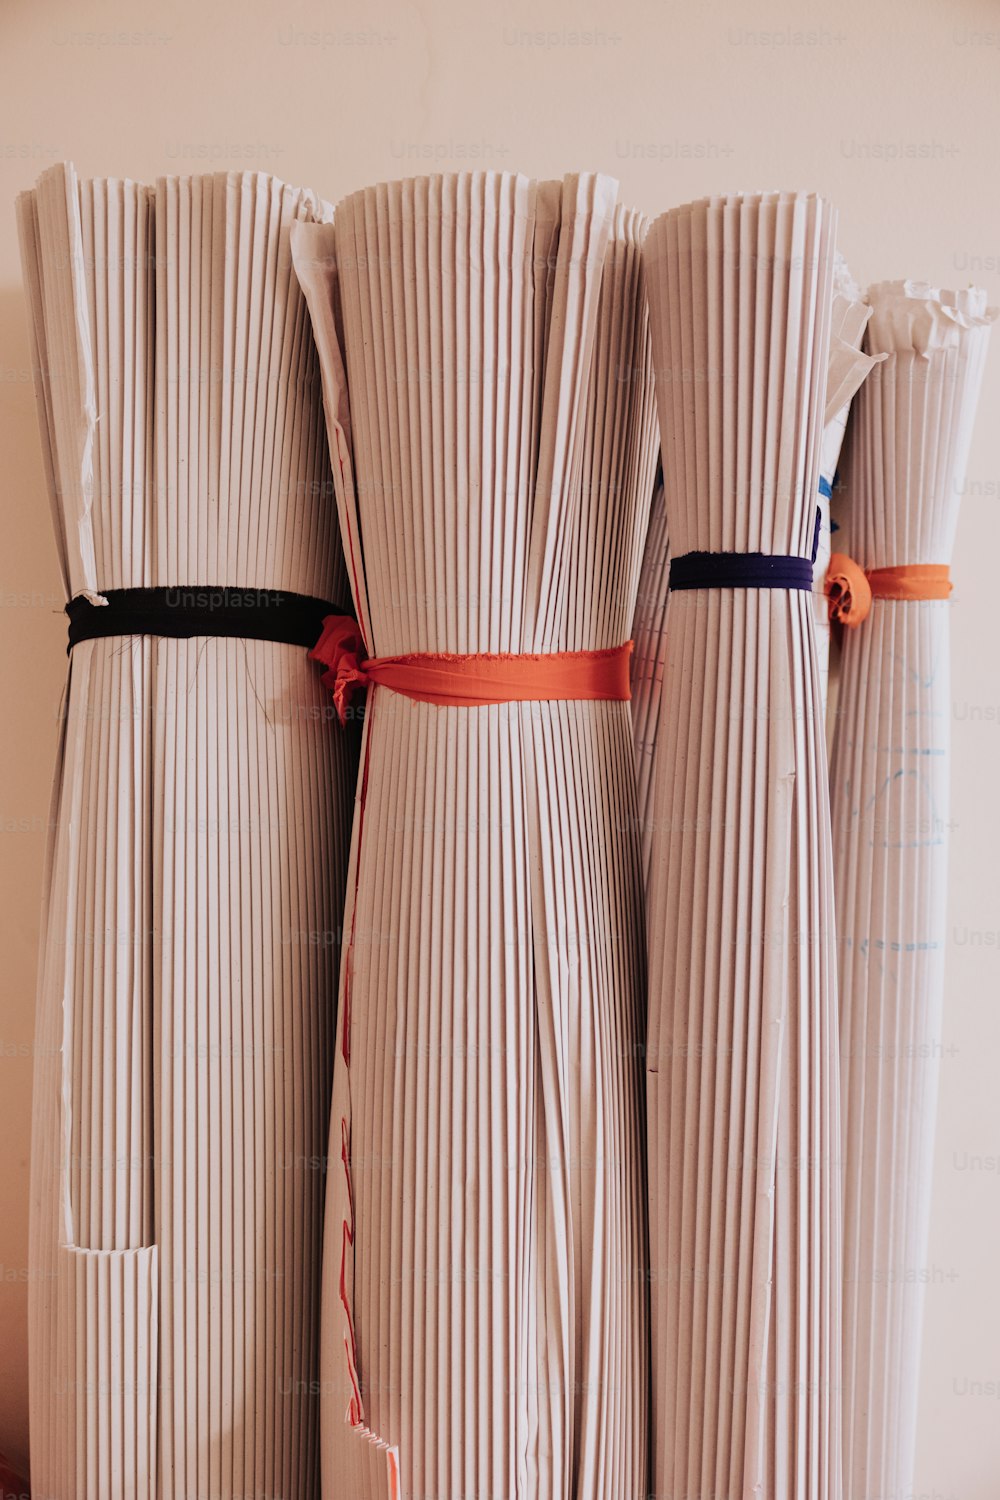 Un grupo de tres jarrones blancos con cintas atadas alrededor de ellos